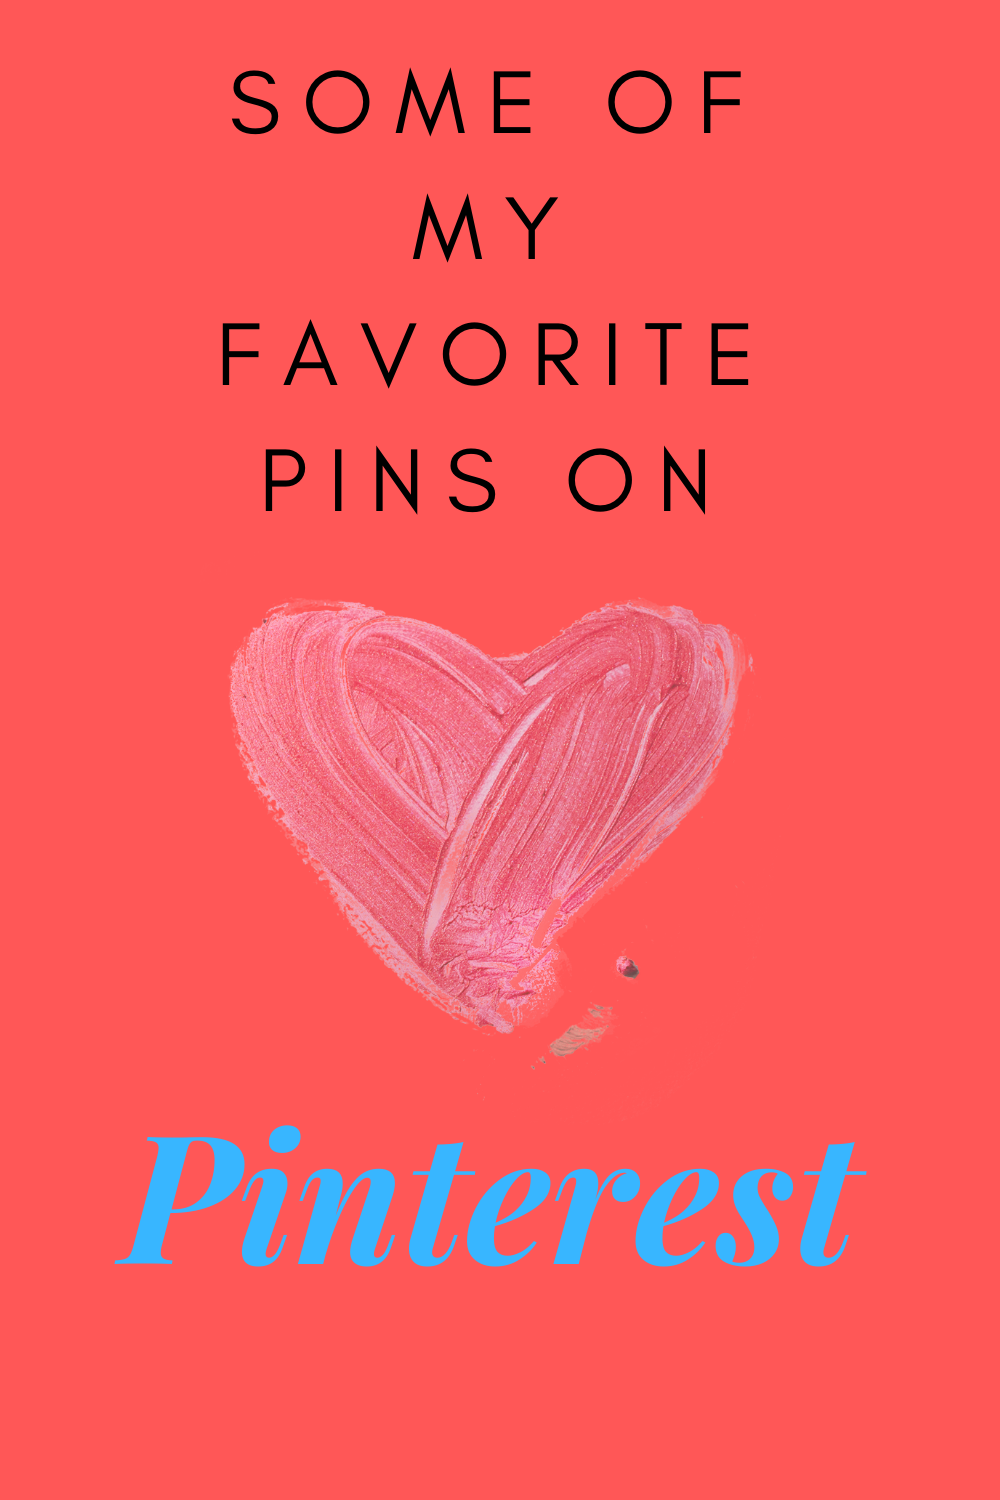 Pin on My favorites Enjoy!